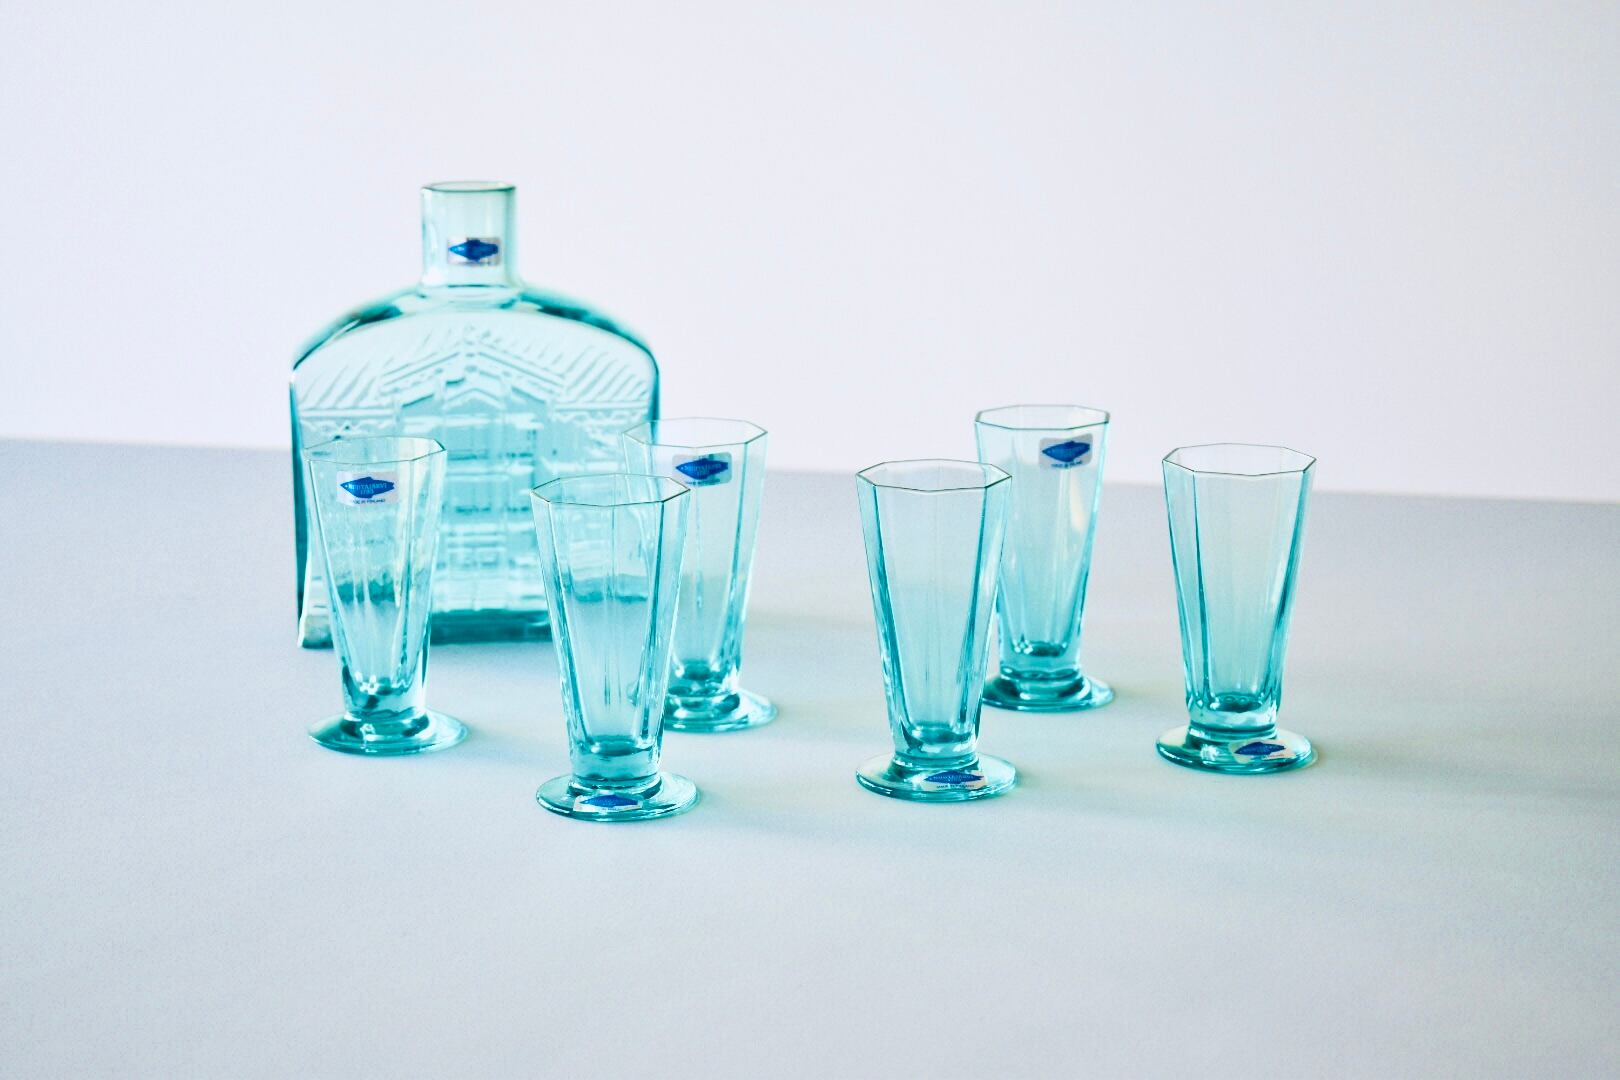 Nuutajarvi Octagon Glass & Bottle set（Kerttu Nurminen）